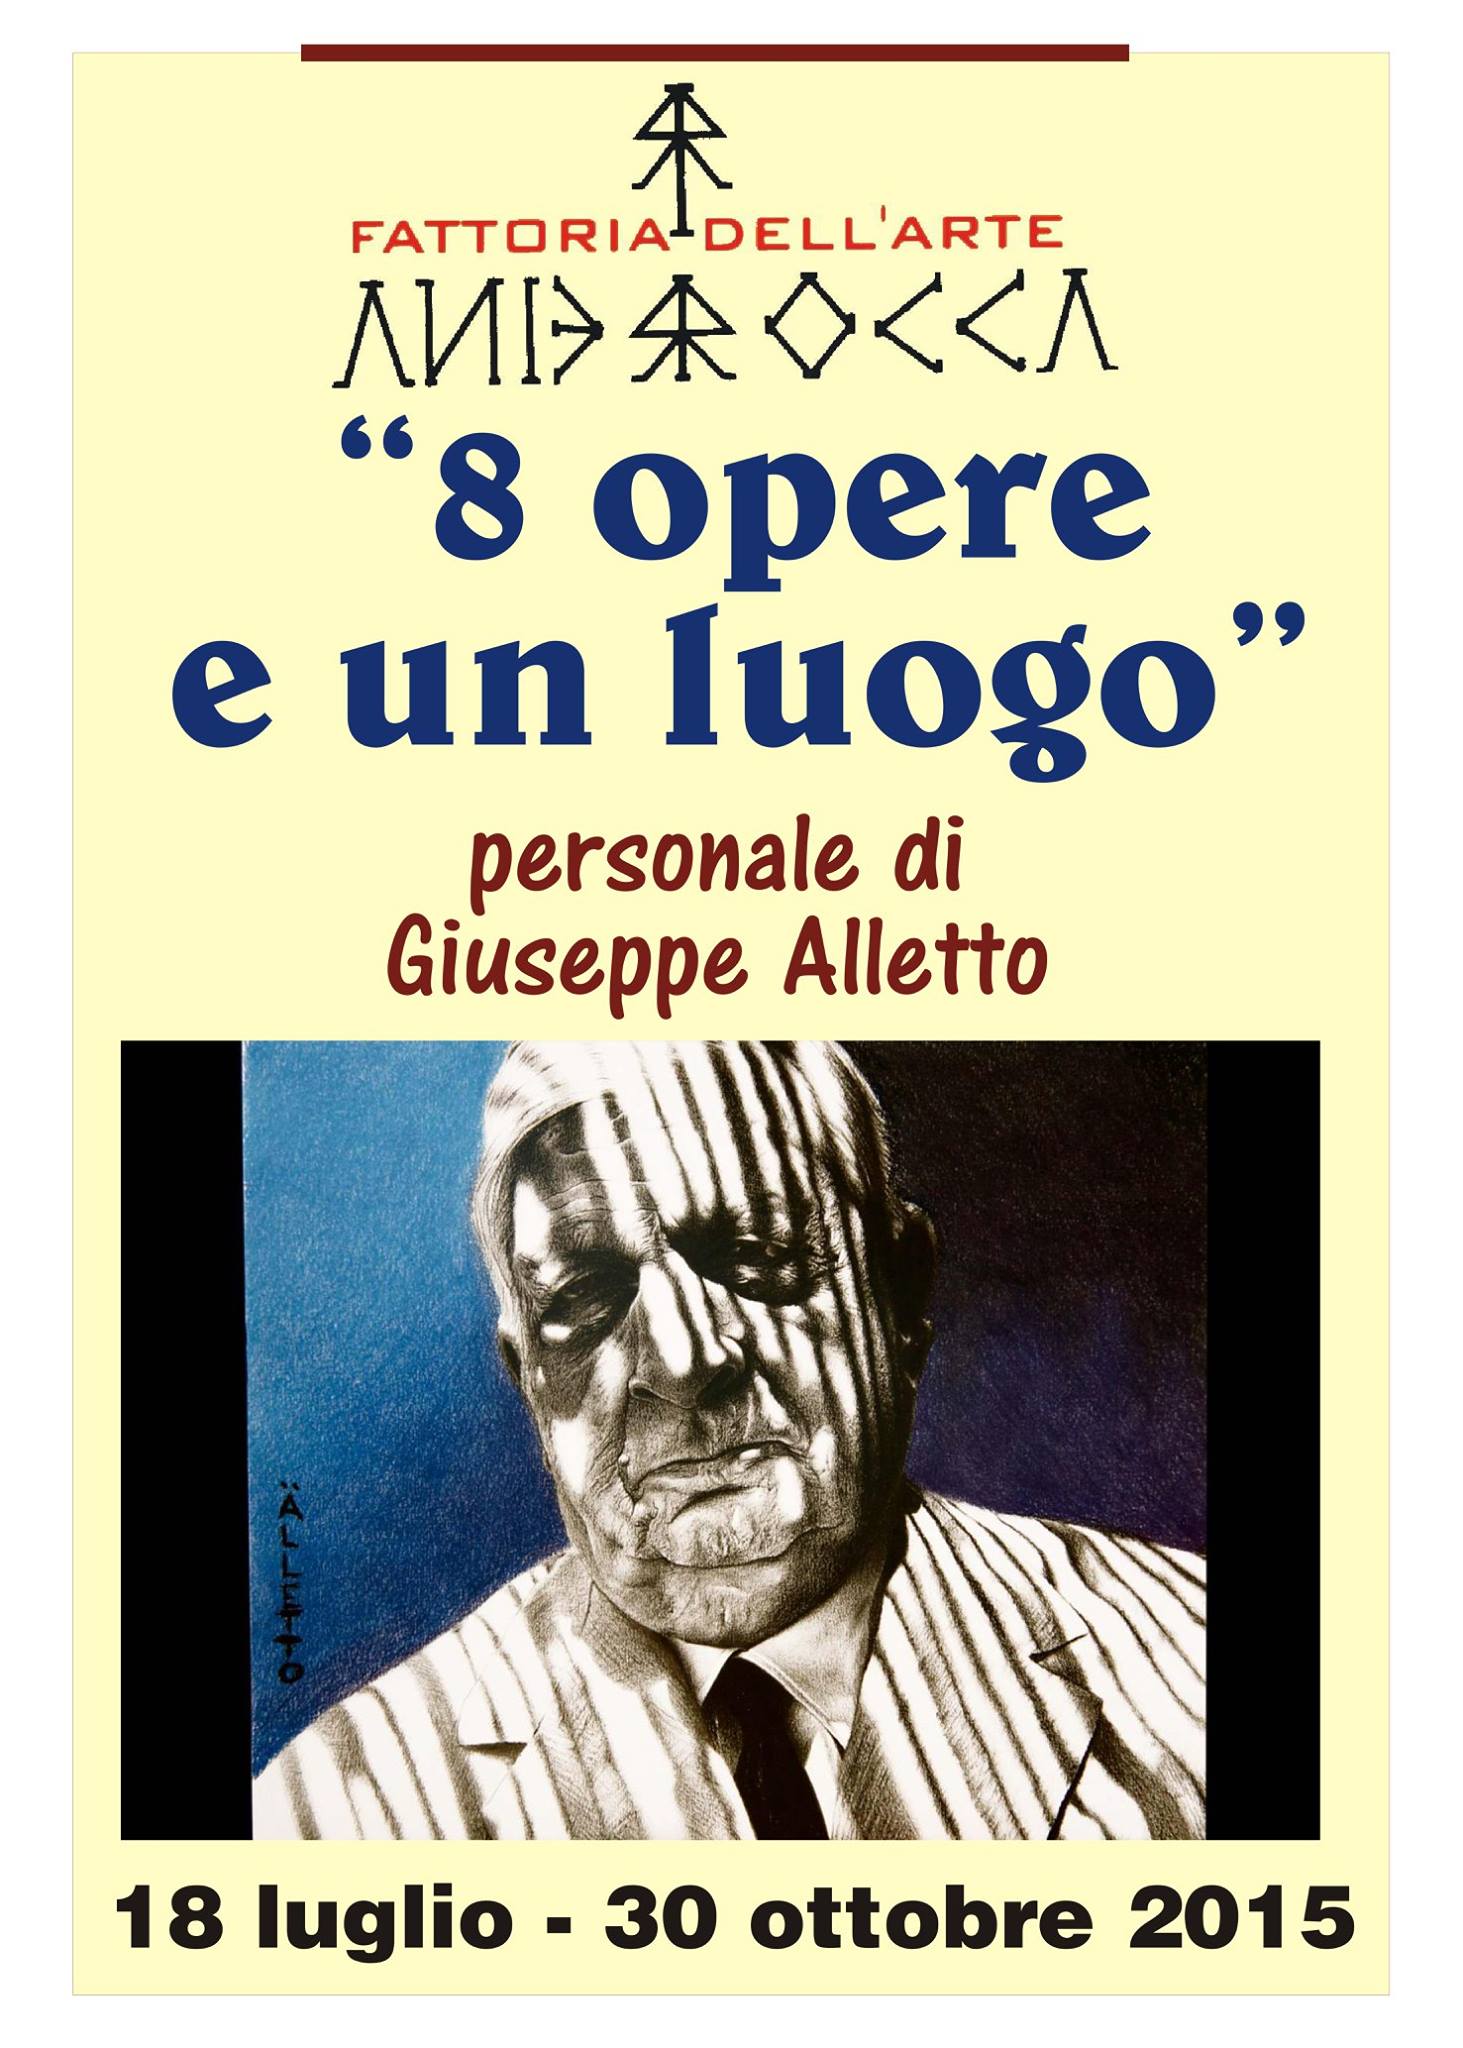 Giuseppe Alletto